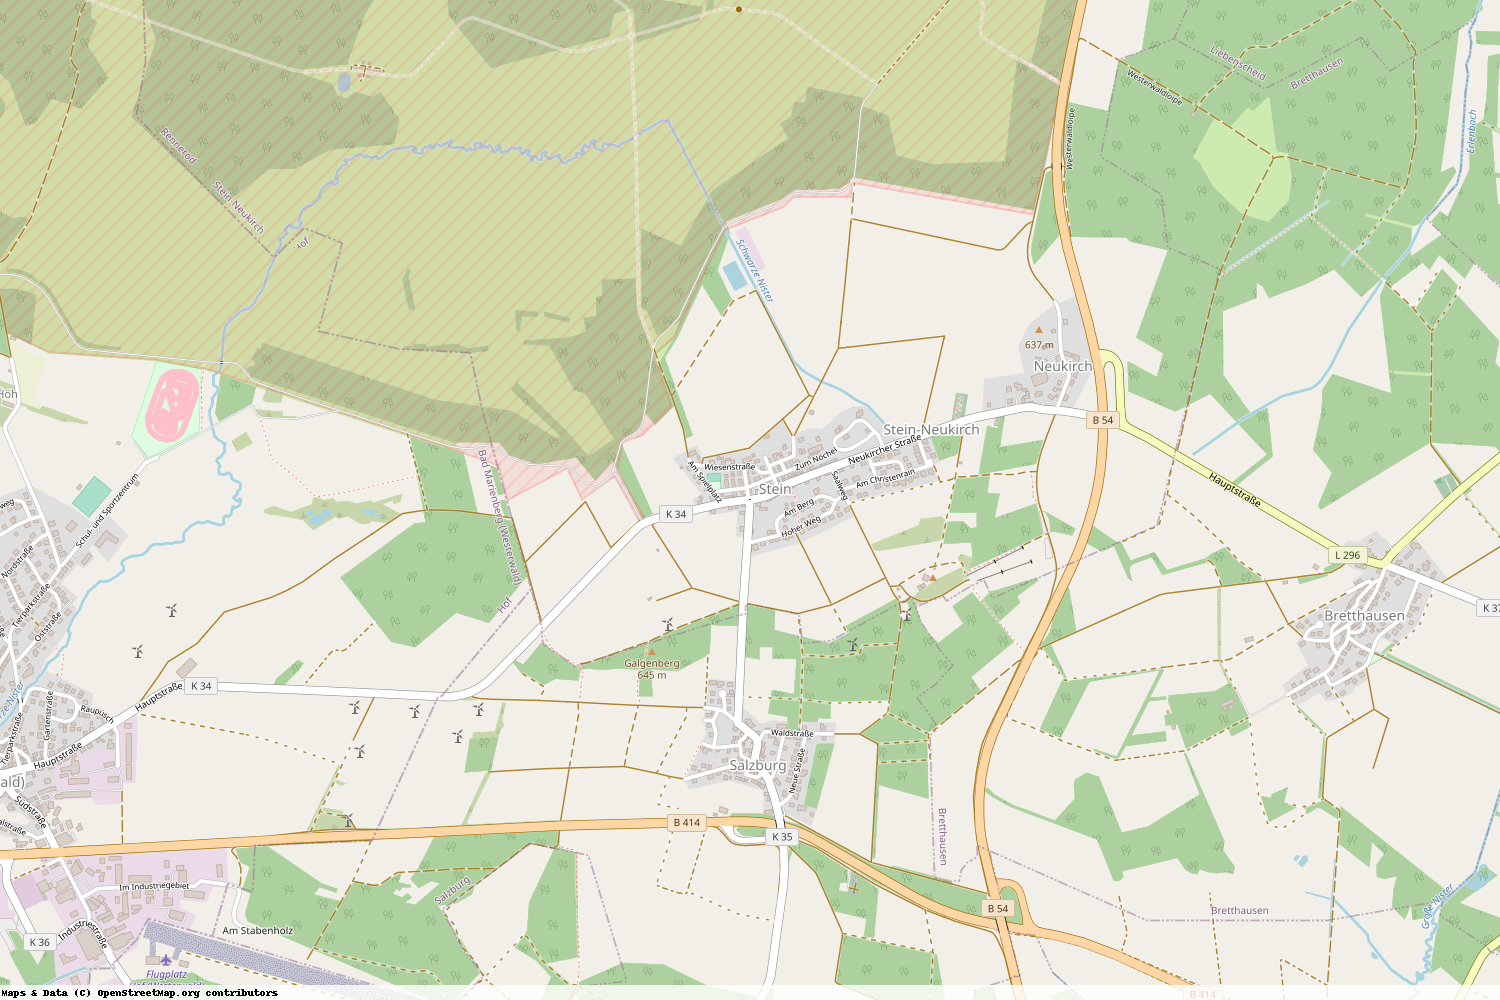 Ist gerade Stromausfall in Rheinland-Pfalz - Westerwaldkreis - Stein-Neukirch?